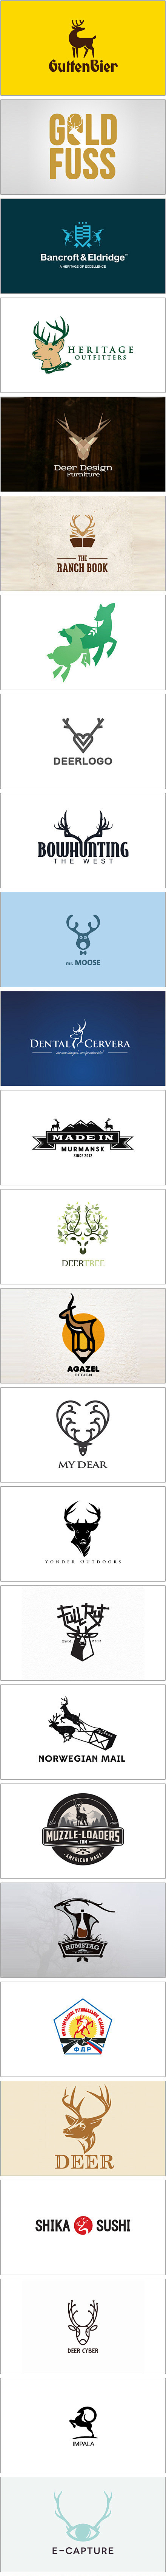 驯鹿元素的Logo设计-驯鹿俗称“四不像...